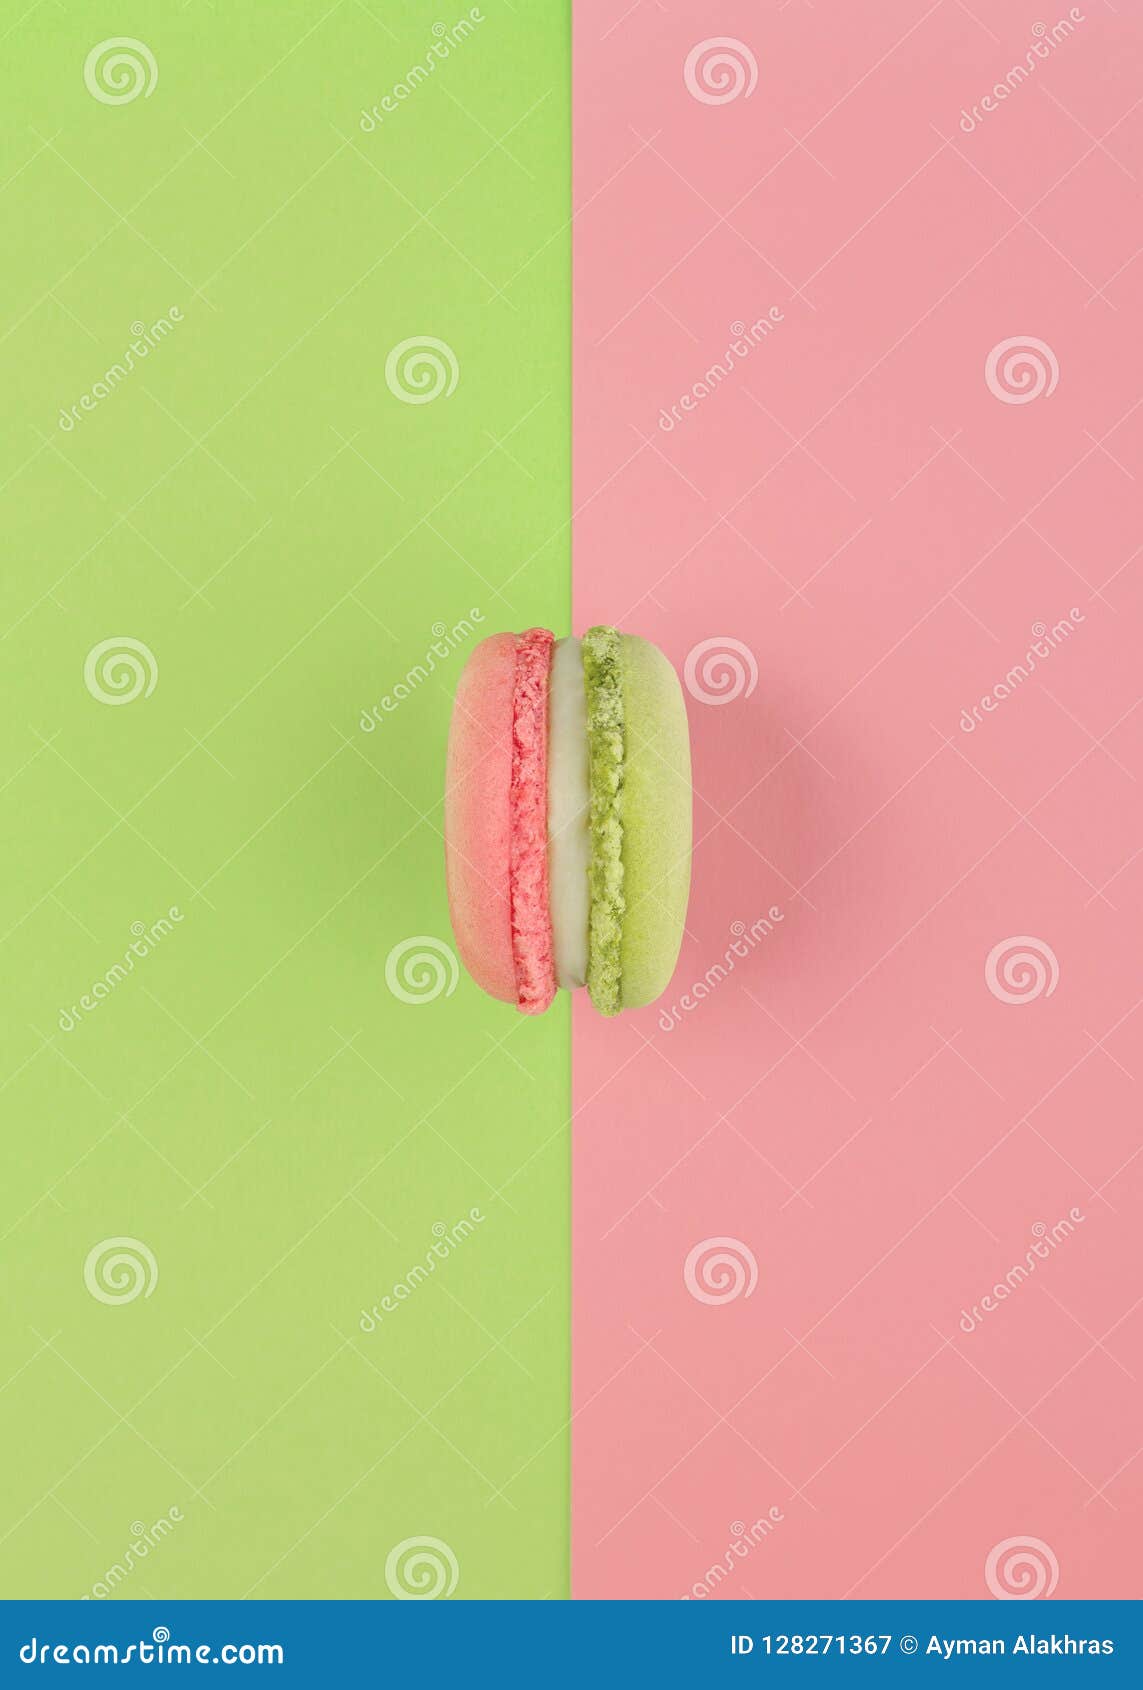 Groene en roze macron op zelfde kleurenachtergrond. Groene en roze macron op omgekeerde zelfde kleurenachtergrond